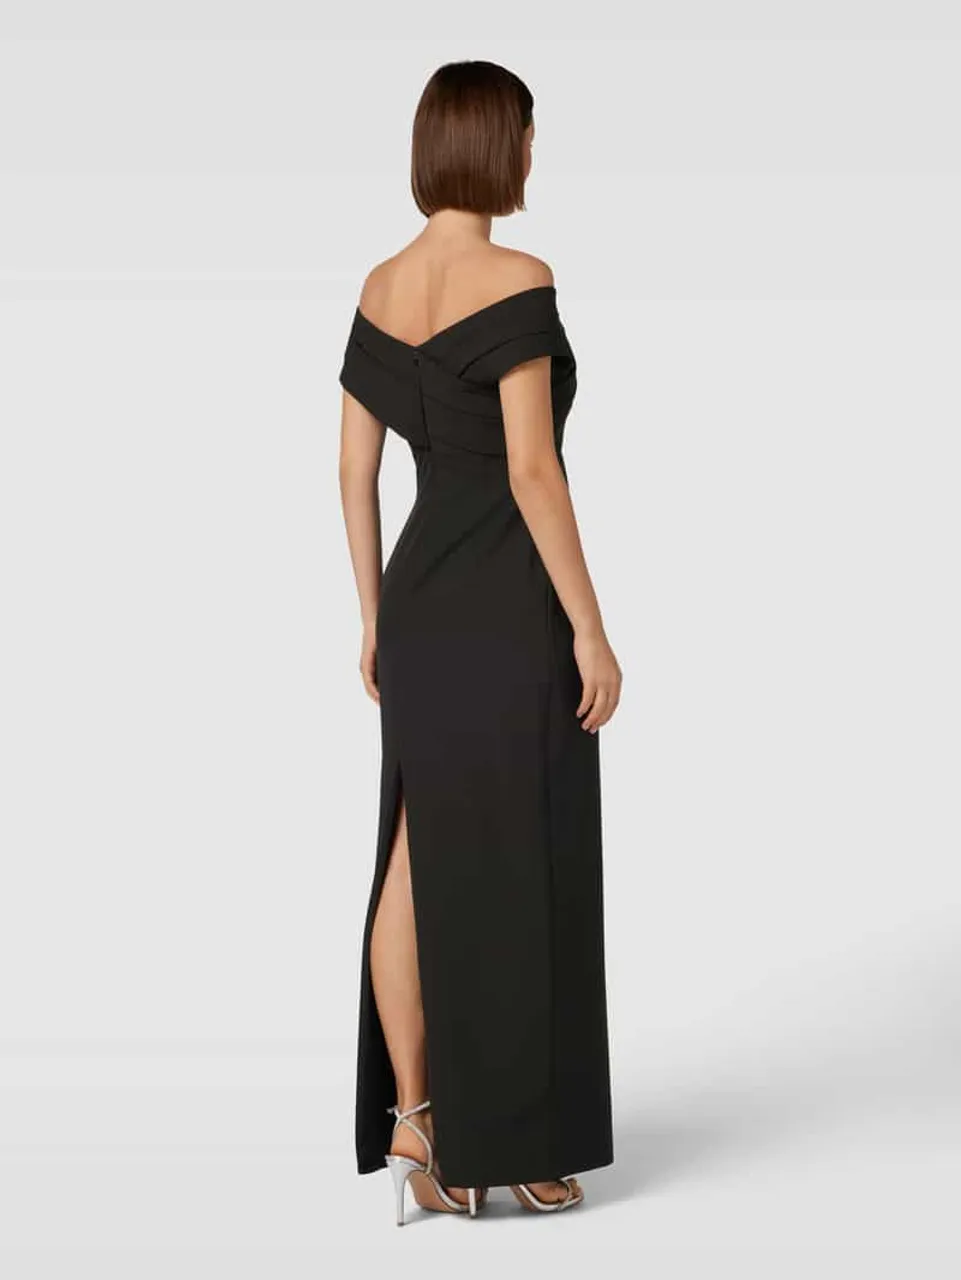 Lauren Dresses Abendkleid in Wickel-Optik Modell 'IRENE' in Black